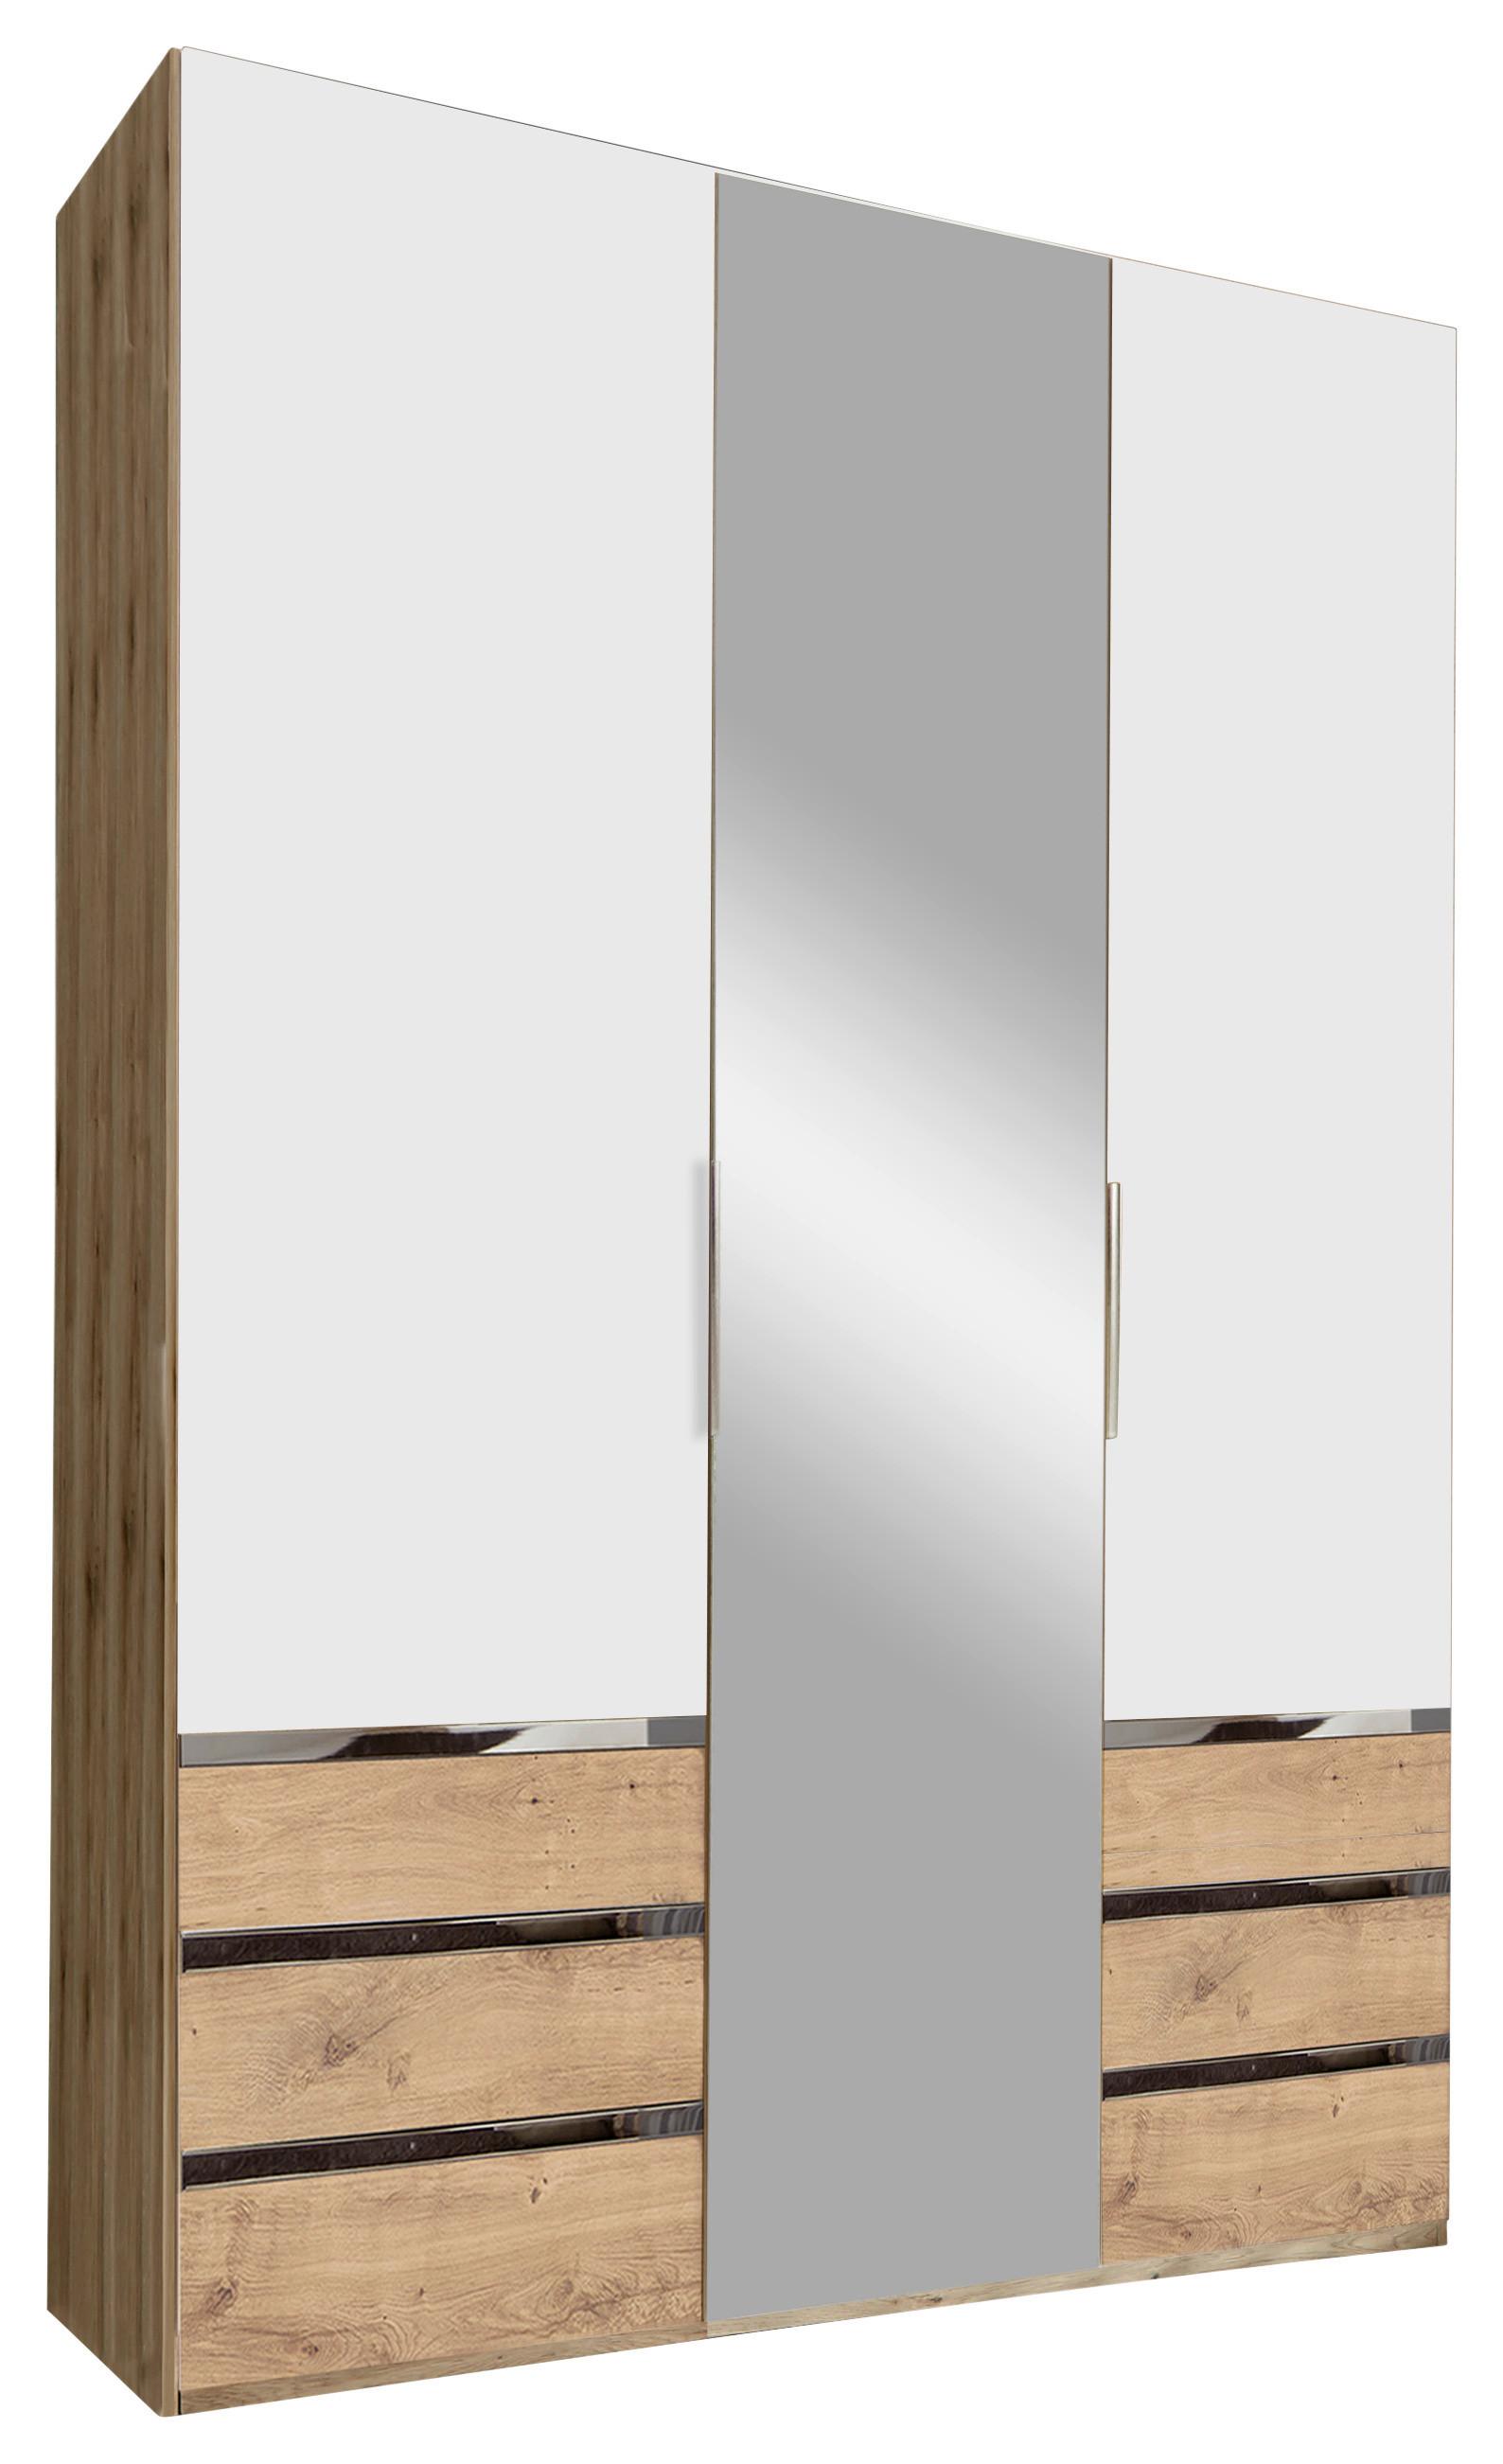 Drehtürenschrank mit Spiegel + Laden 150cm Level 36a, Weiß - Eichefarben/Weiß, MODERN, Glas/Holzwerkstoff (150/216/58cm) - MID.YOU